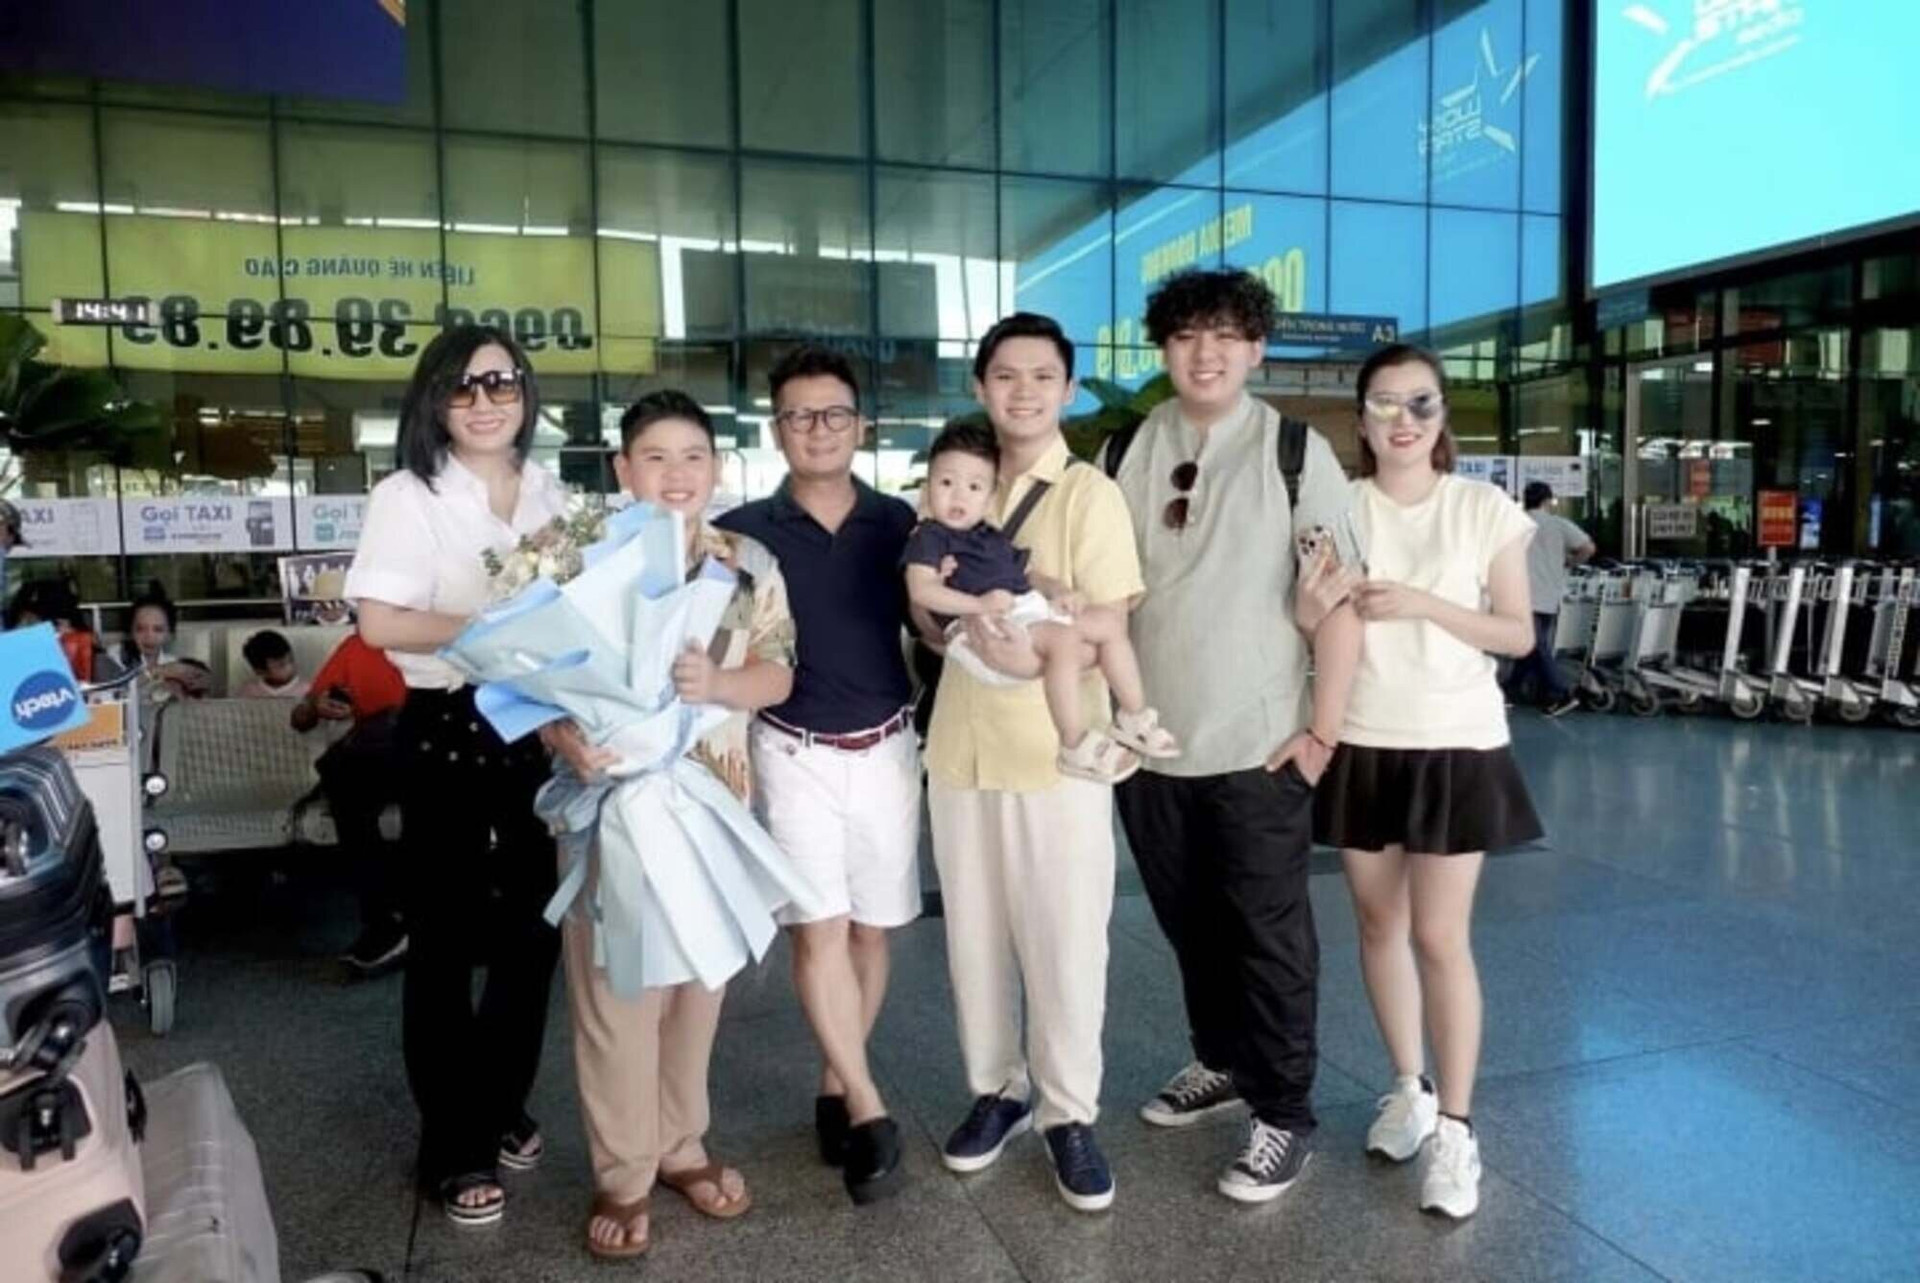 Tháng 6 năm nay, Trizzie đưa ba con trai về Việt Nam và vui vẻ gặp gỡ gia đình mới của chồng cũ - ca sĩ Bằng Kiều.